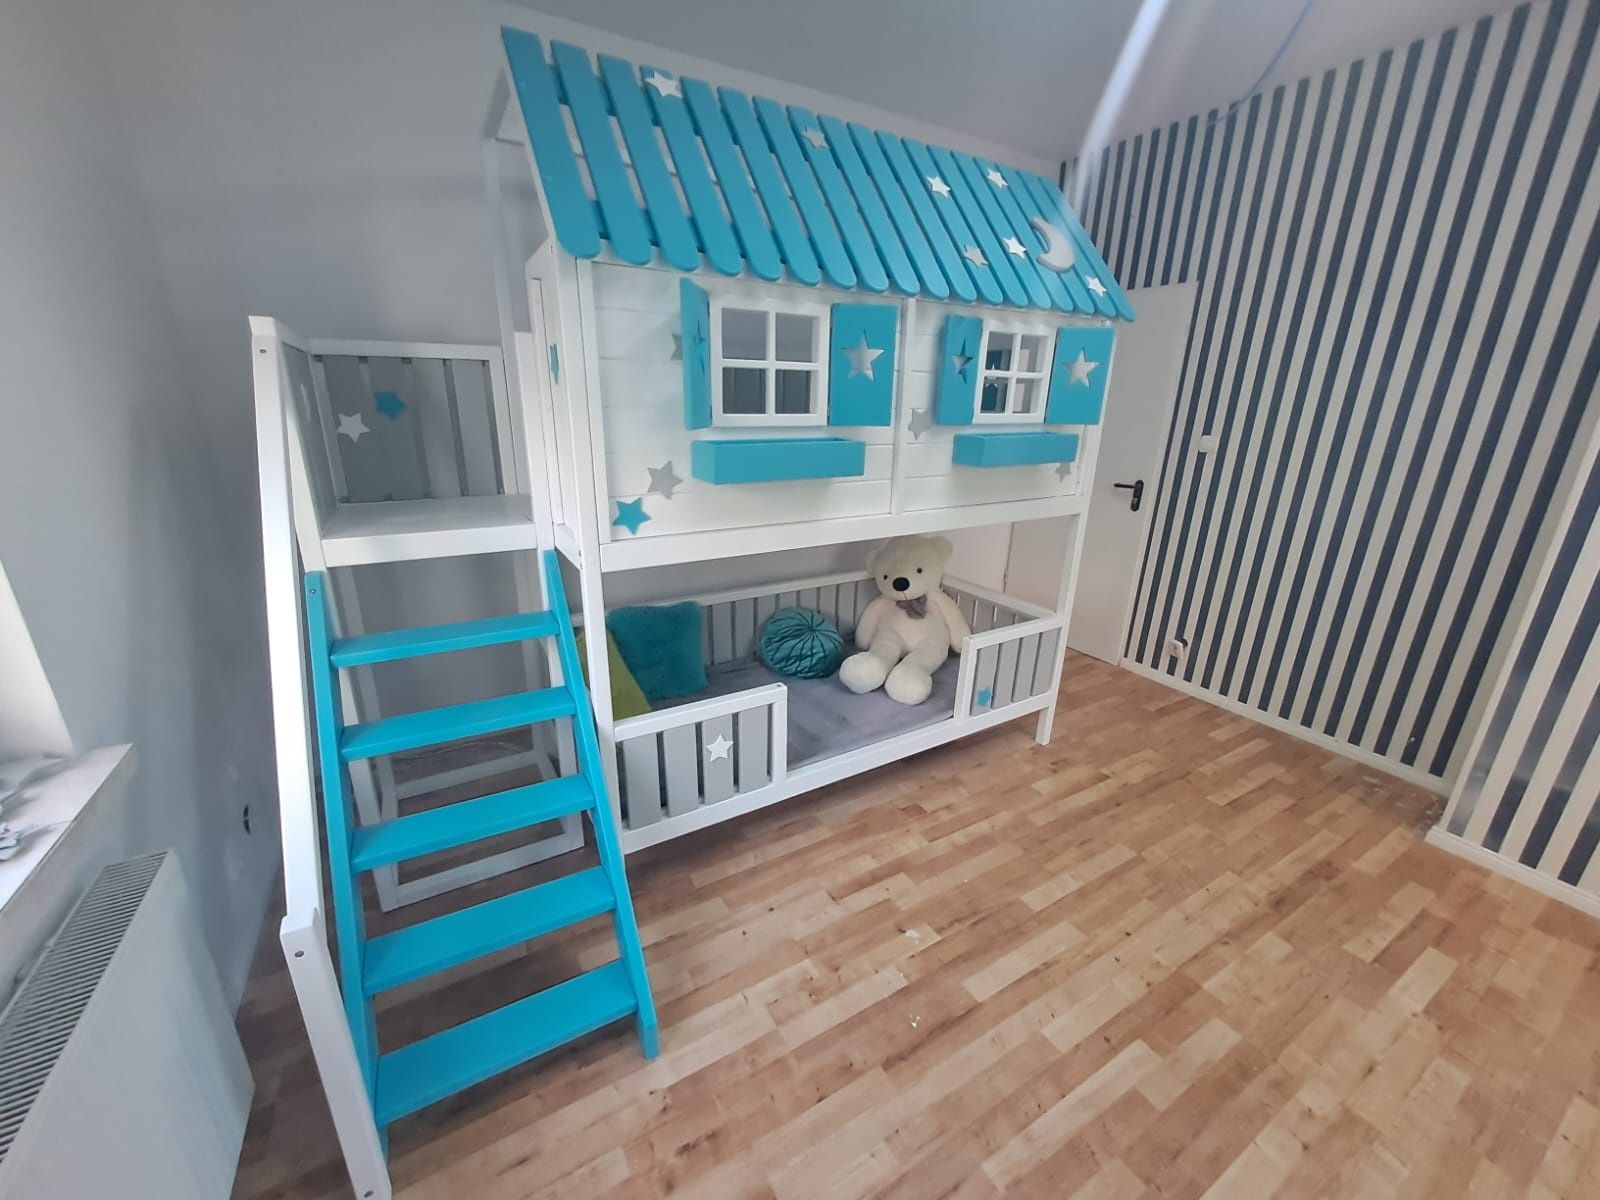 Łóżeczko  drewniane dzieciece domek piętrowy XL dla dzieci łóżko RATY